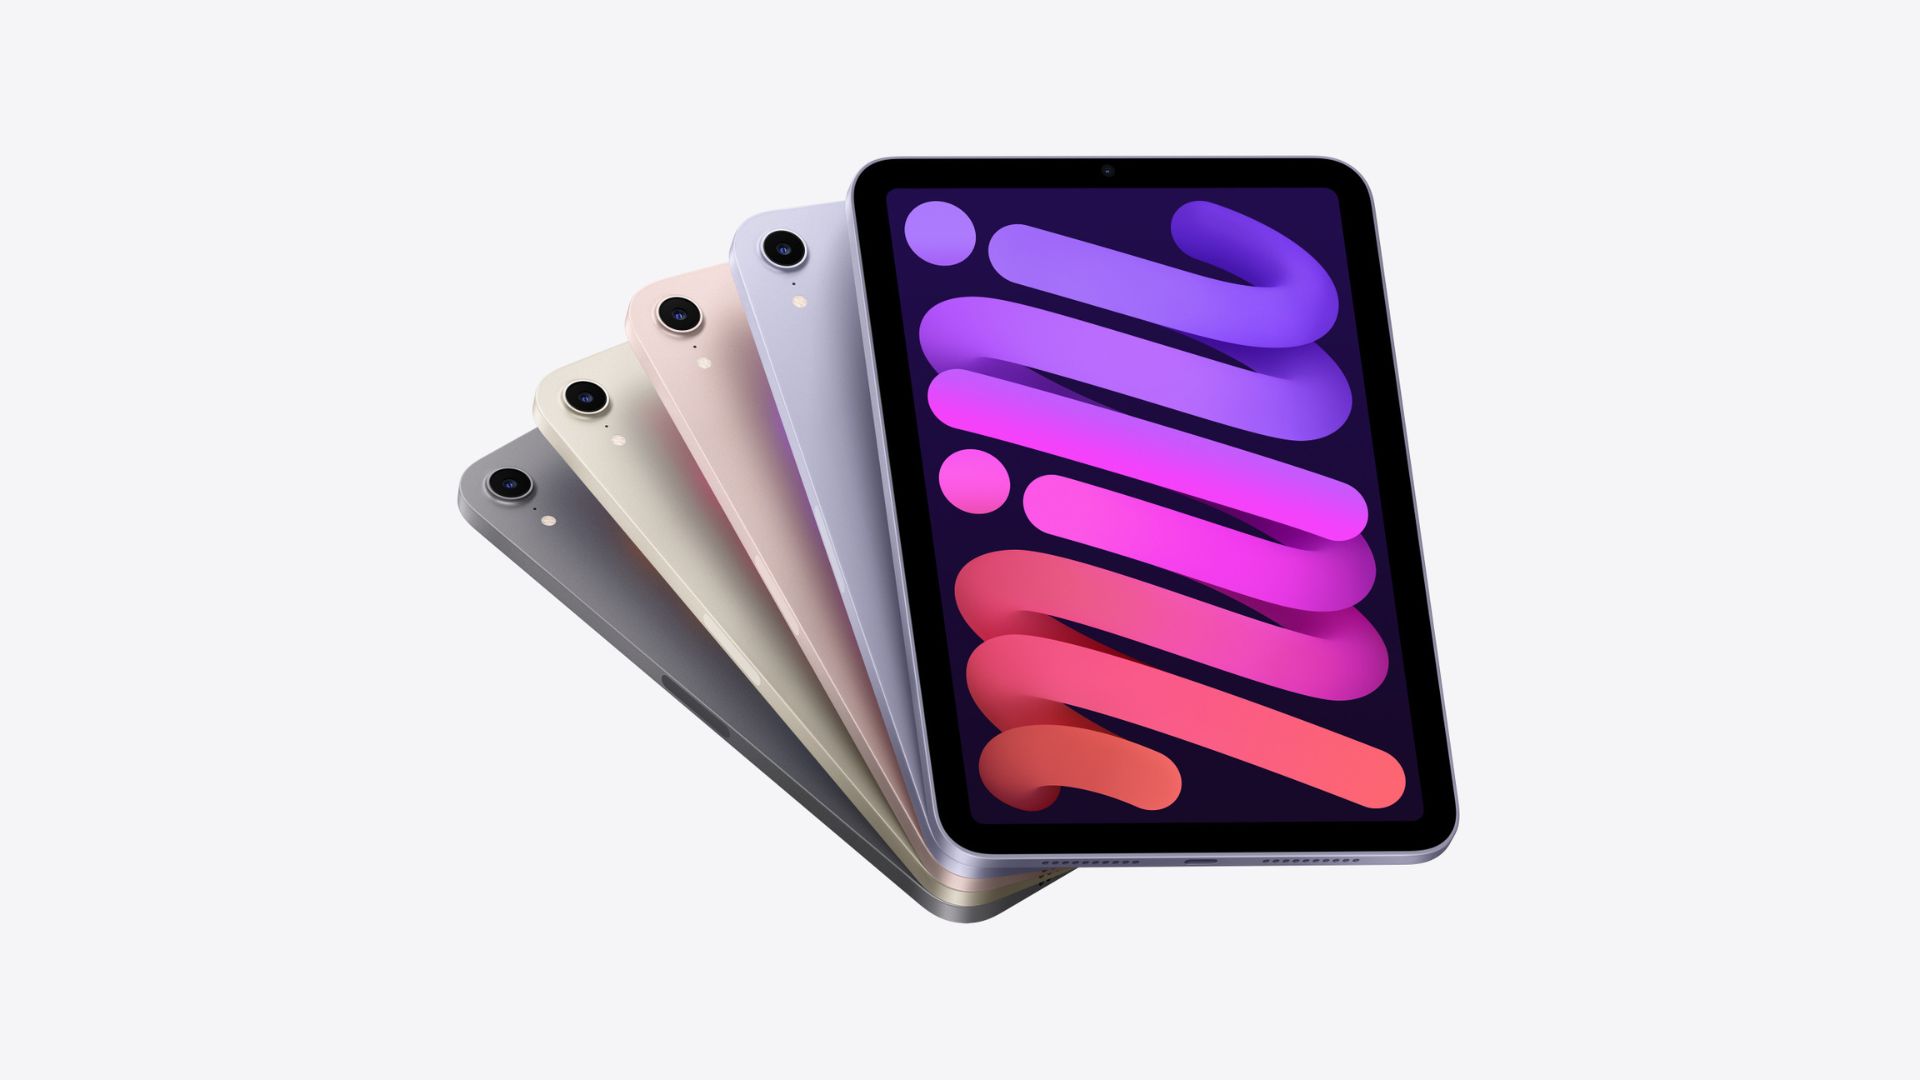 最高の iPad の 1 つである iPad mini は、複数回表示され、さまざまな色 (左から右へ、黒、緑、ピンク、紫、紫) のトランプのように広がっていました。 一番左の山は上向きで、画面に紫と赤の色のストロークがあり、残りはカードのように互いに隠れており、左上隅に小さなカメラリングが表示されています.